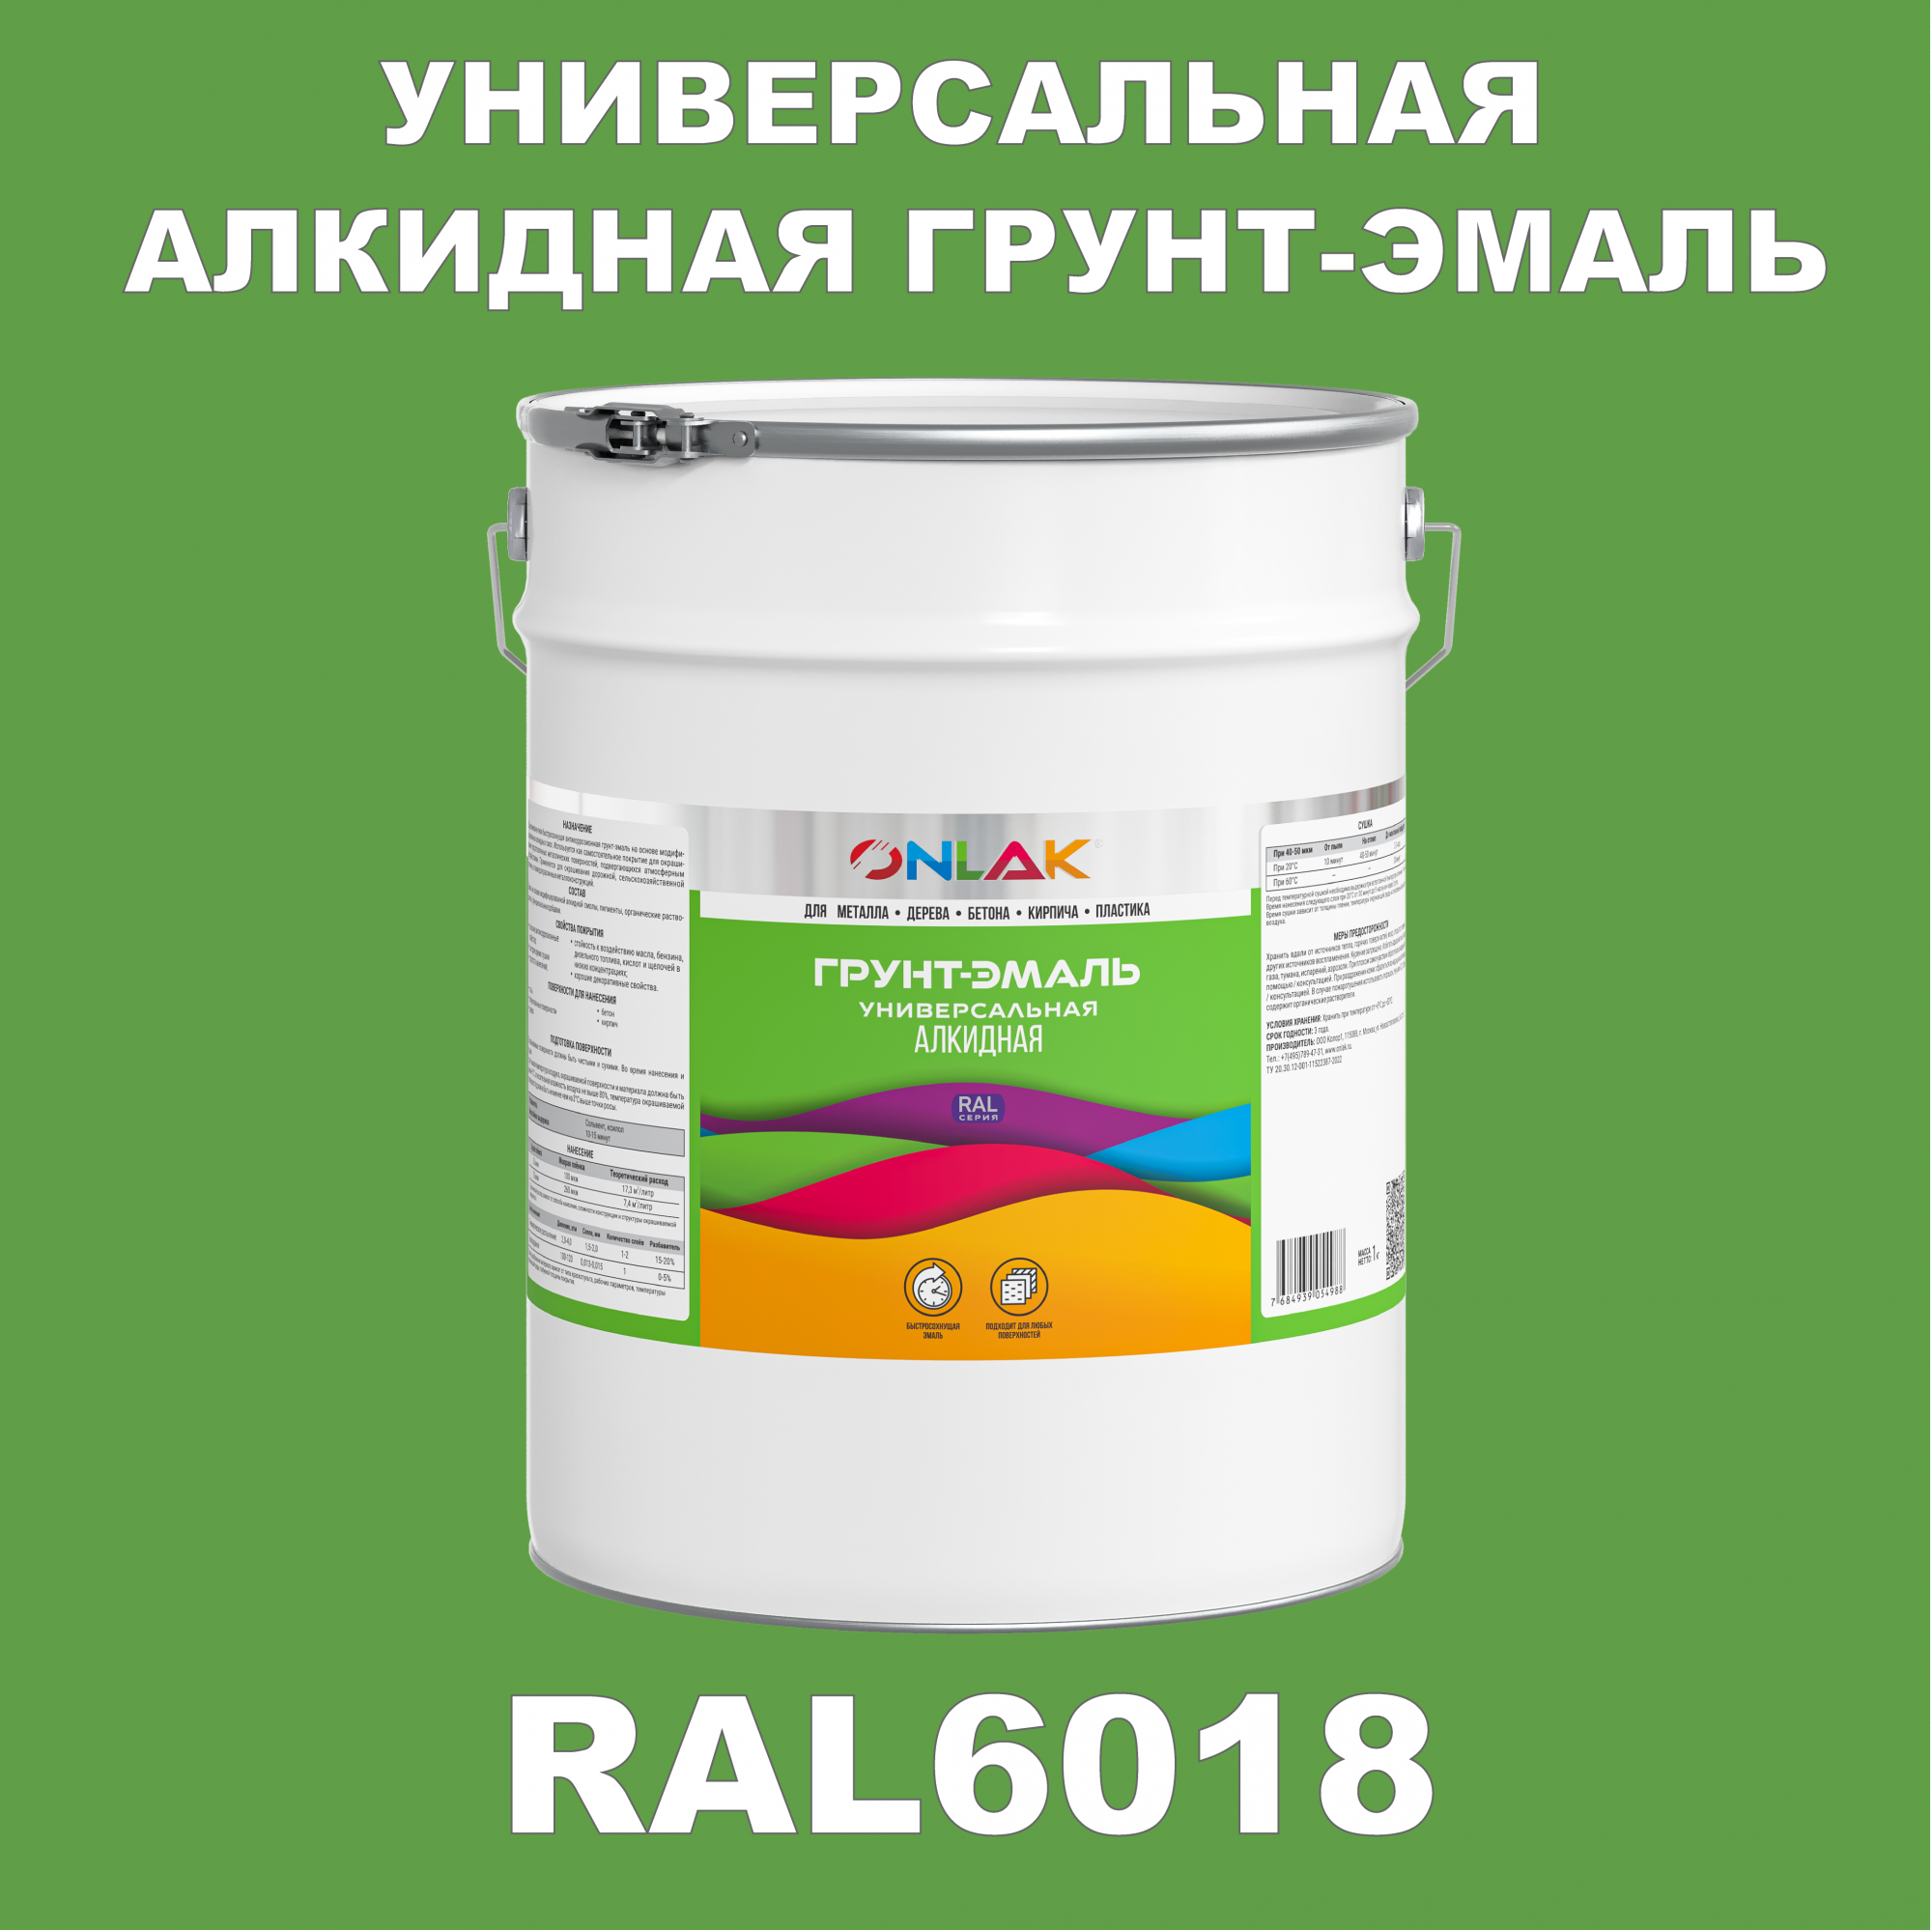 Грунт-эмаль ONLAK 1К RAL6018 антикоррозионная алкидная по металлу по ржавчине 20 кг грунт эмаль yollo по ржавчине алкидная серая 0 9 кг